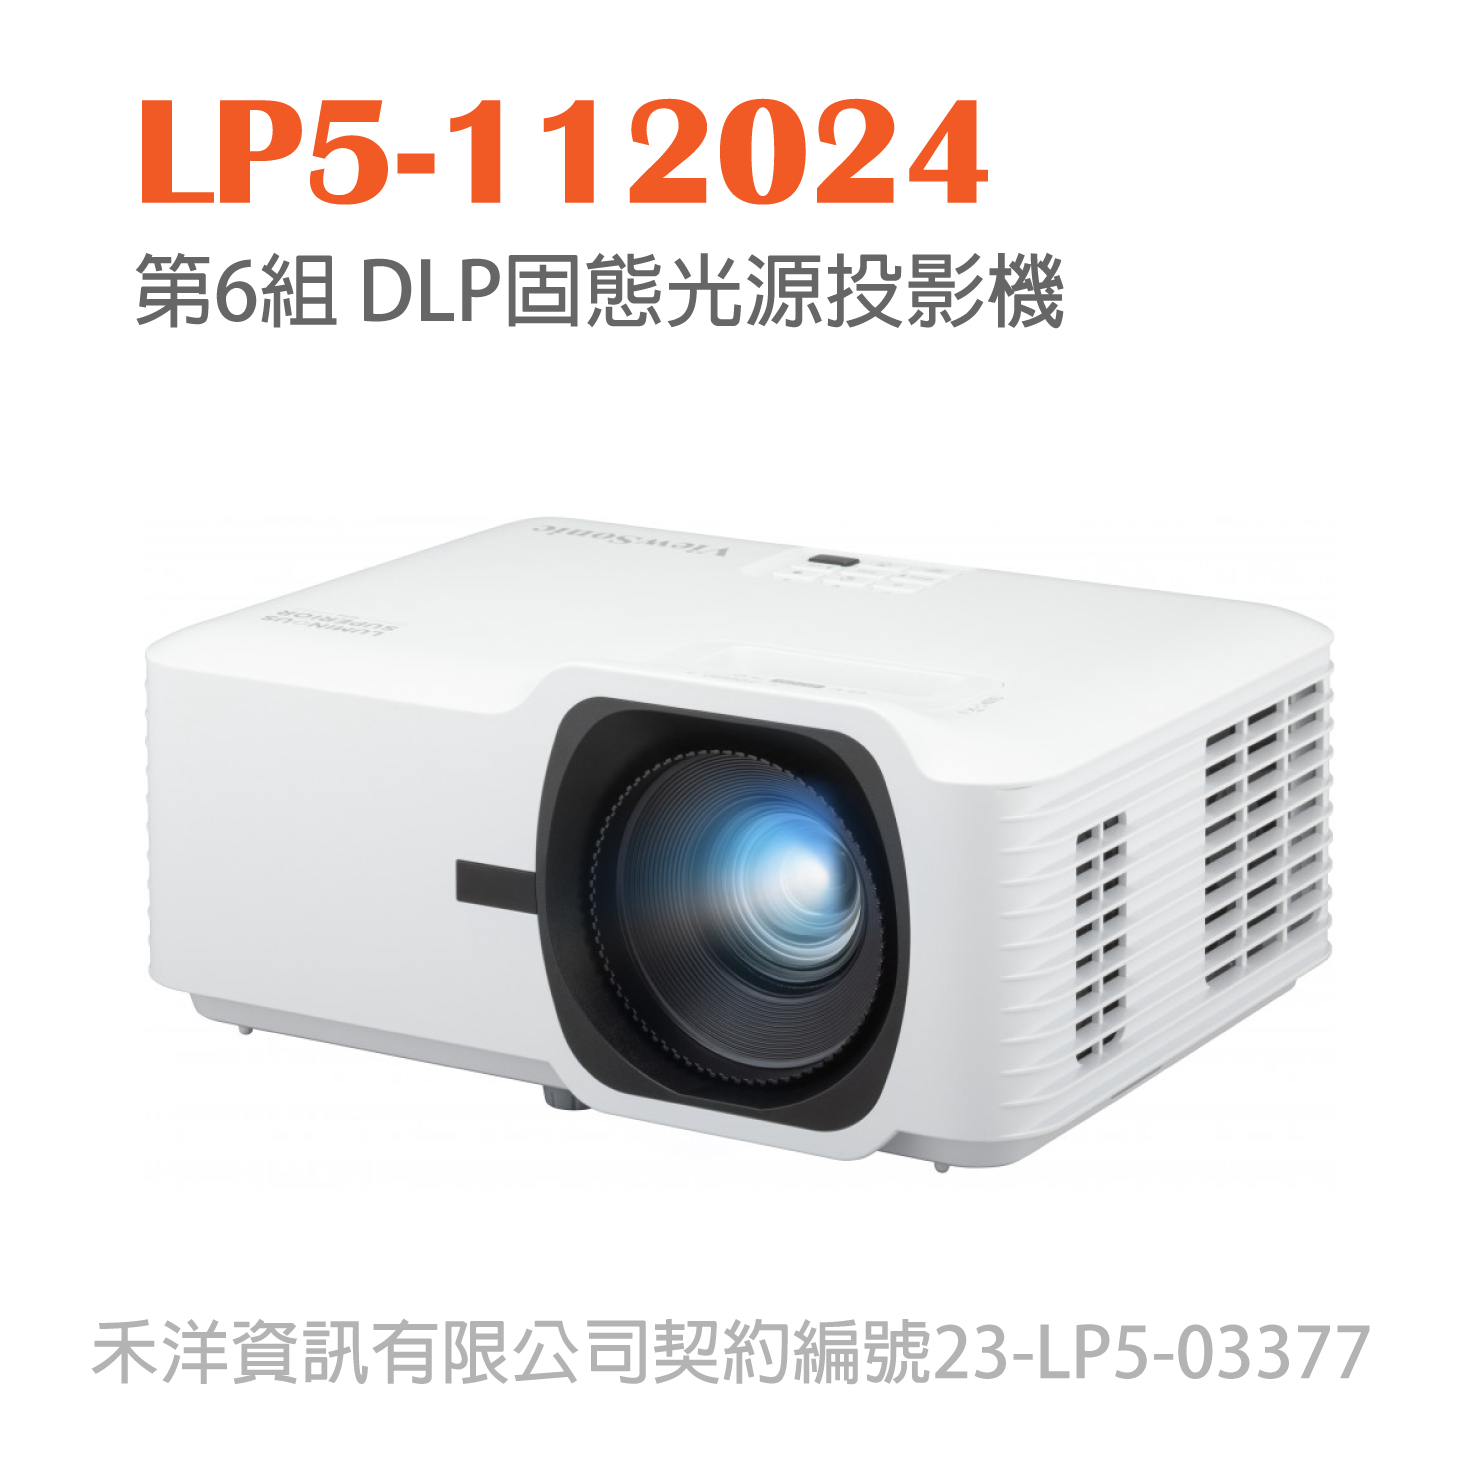 LP5-112024 台銀投影機標 第6組 DLP固態光源投影機